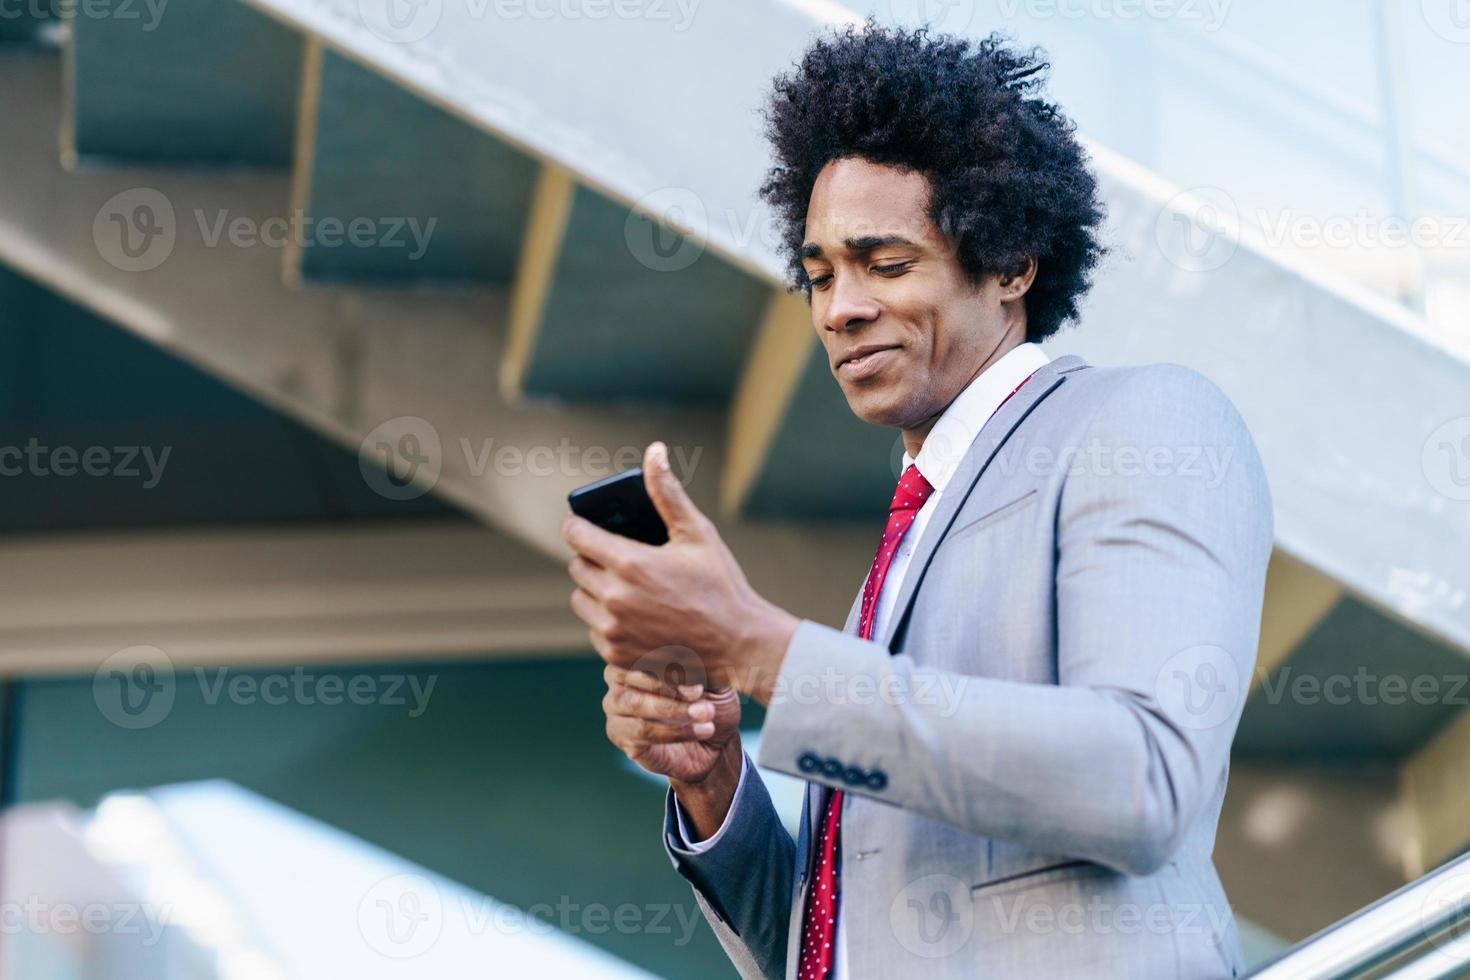 homme d'affaires noir utilisant un smartphone près d'un immeuble de bureaux photo